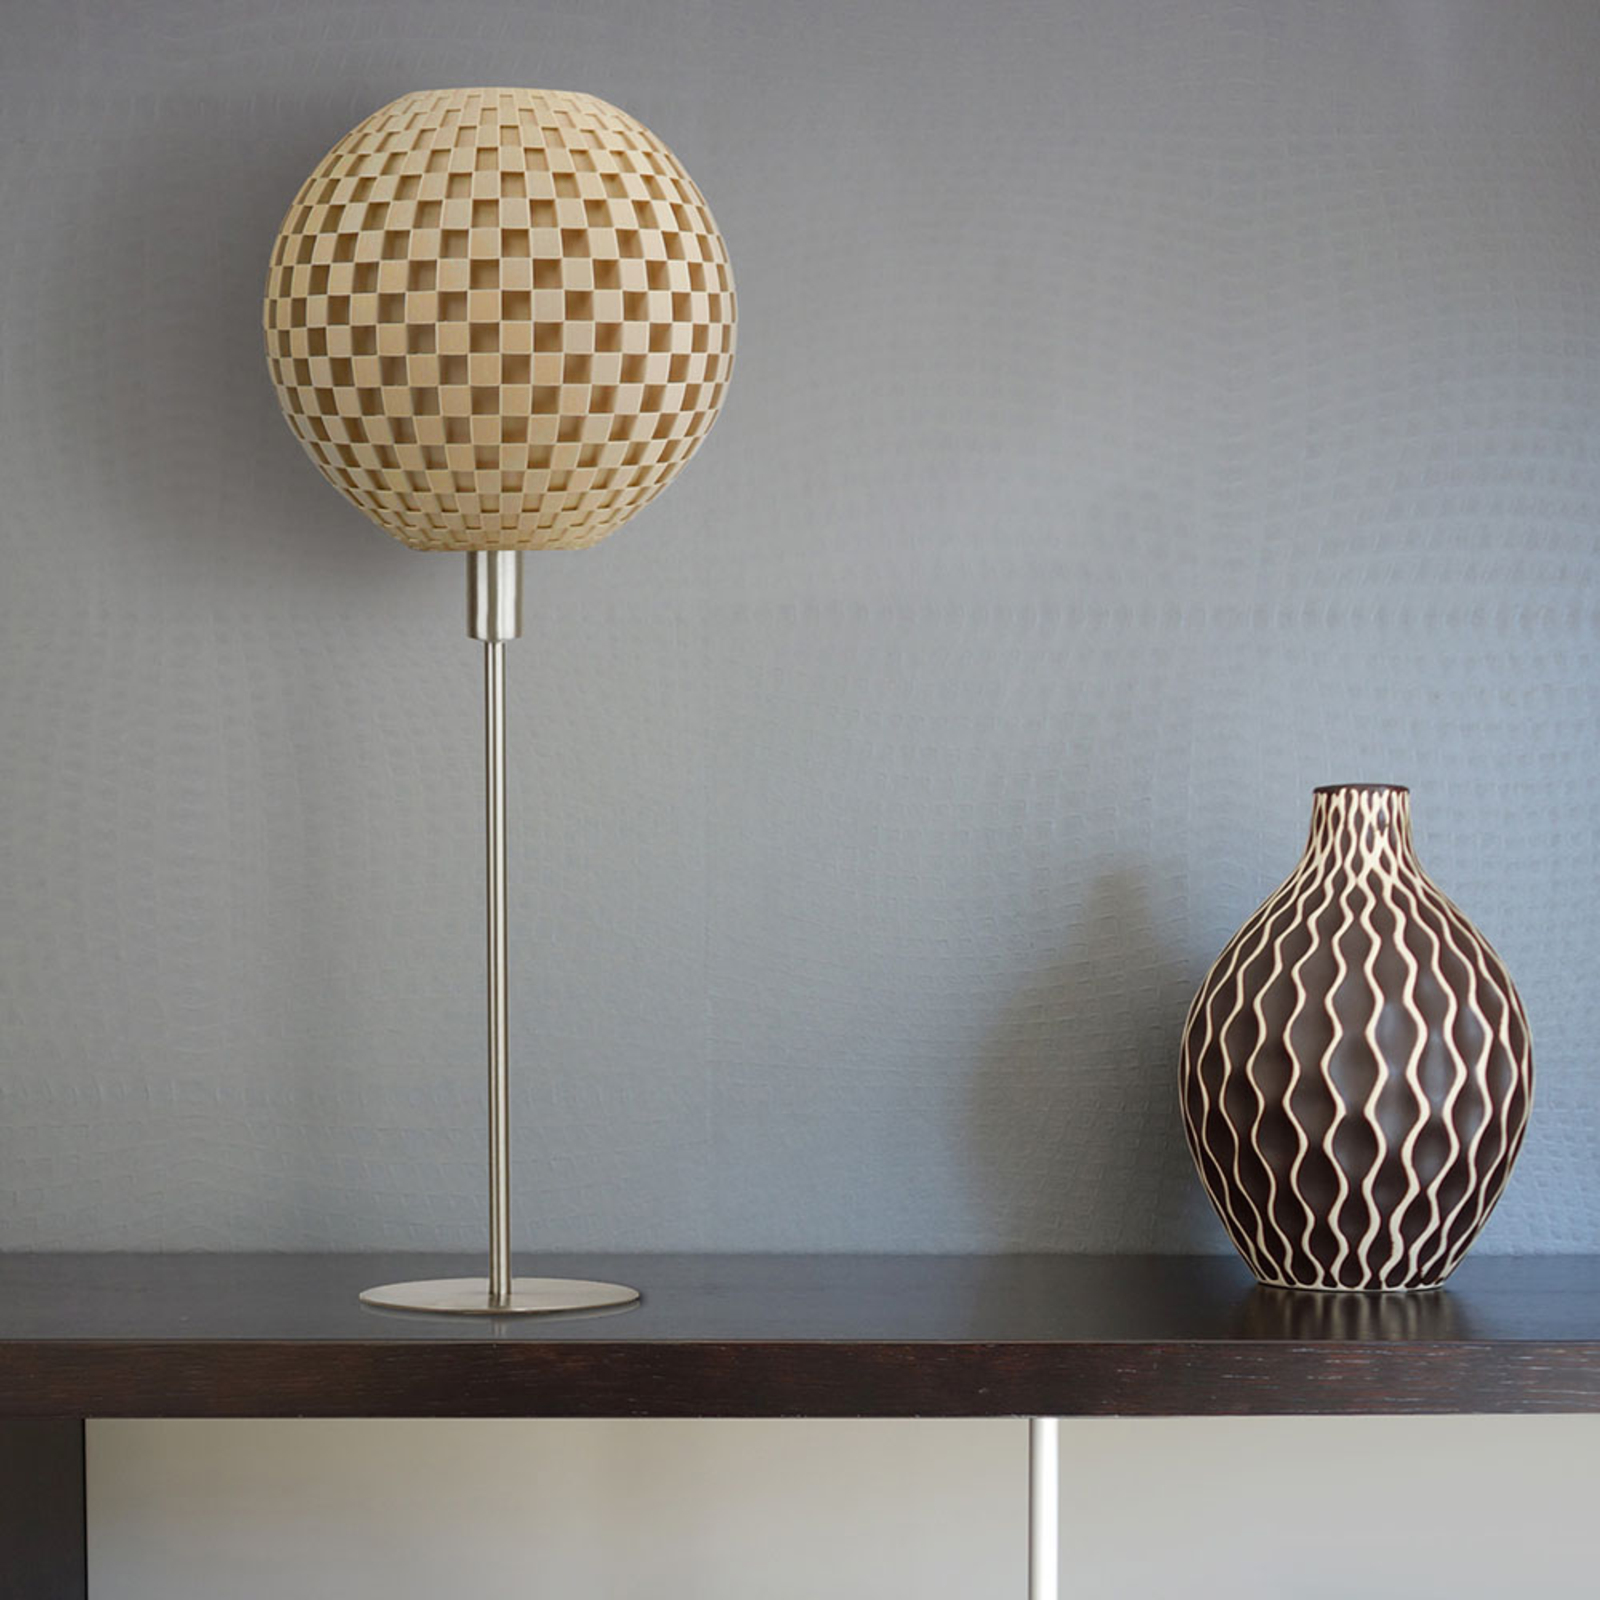 Flechtwerk table lamp, globe with base, beige